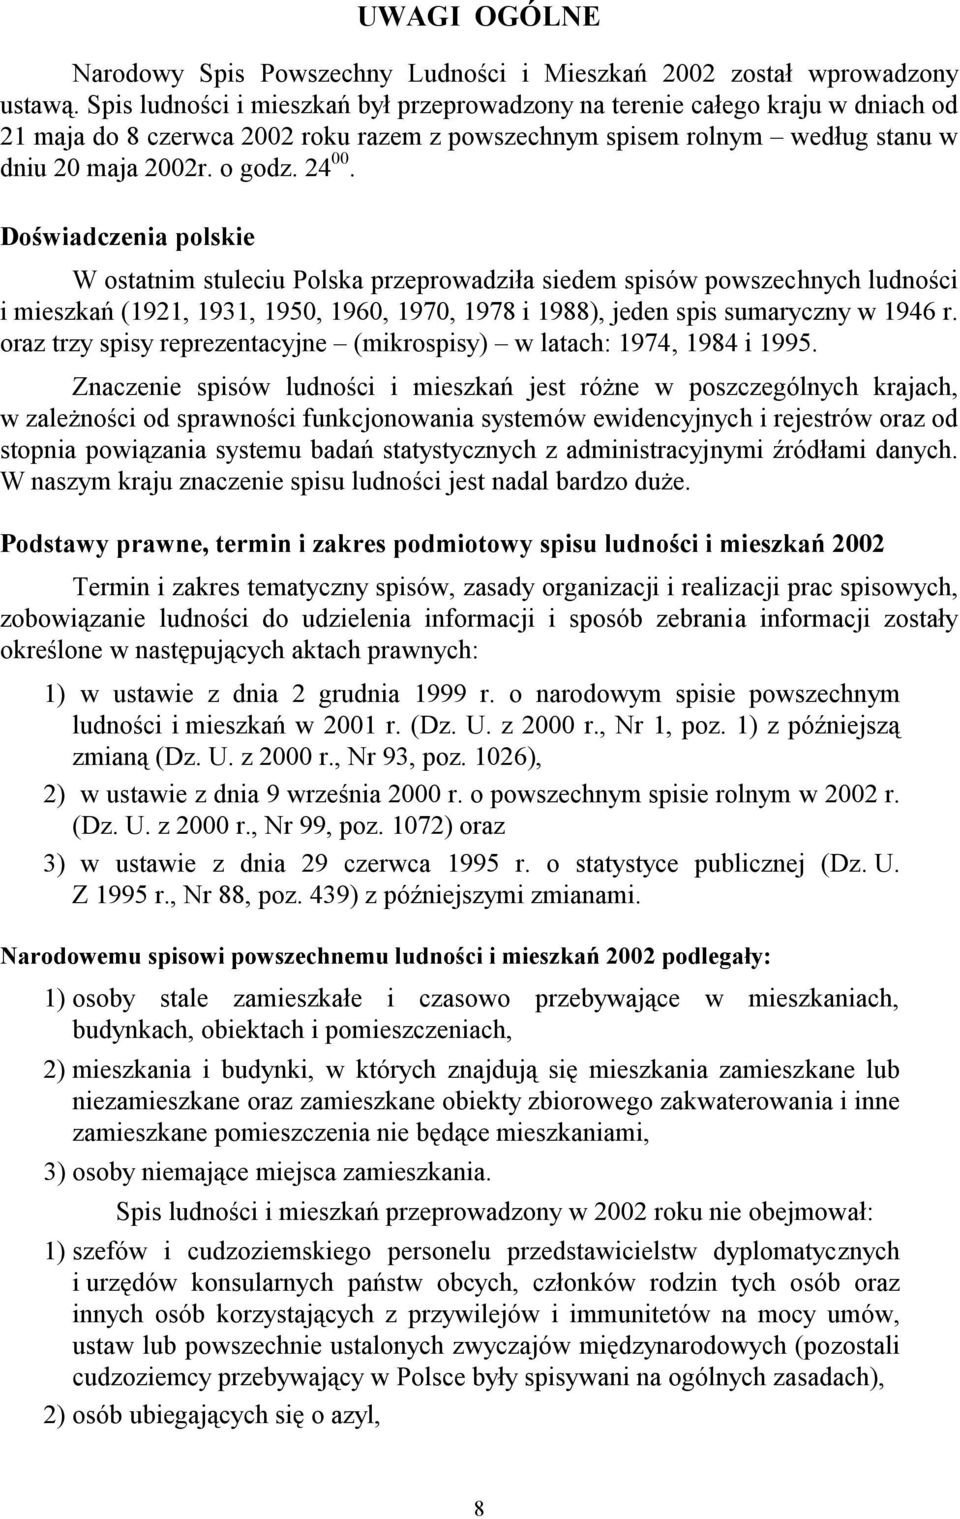 Doświadczenia polskie W ostatnim stuleciu Polska przeprowadziła siedem spisów powszechnych ludności i mieszkań (1921, 1931, 1950, 1960, 1970, 1978 i 1988), jeden spis sumaryczny w 1946 r.